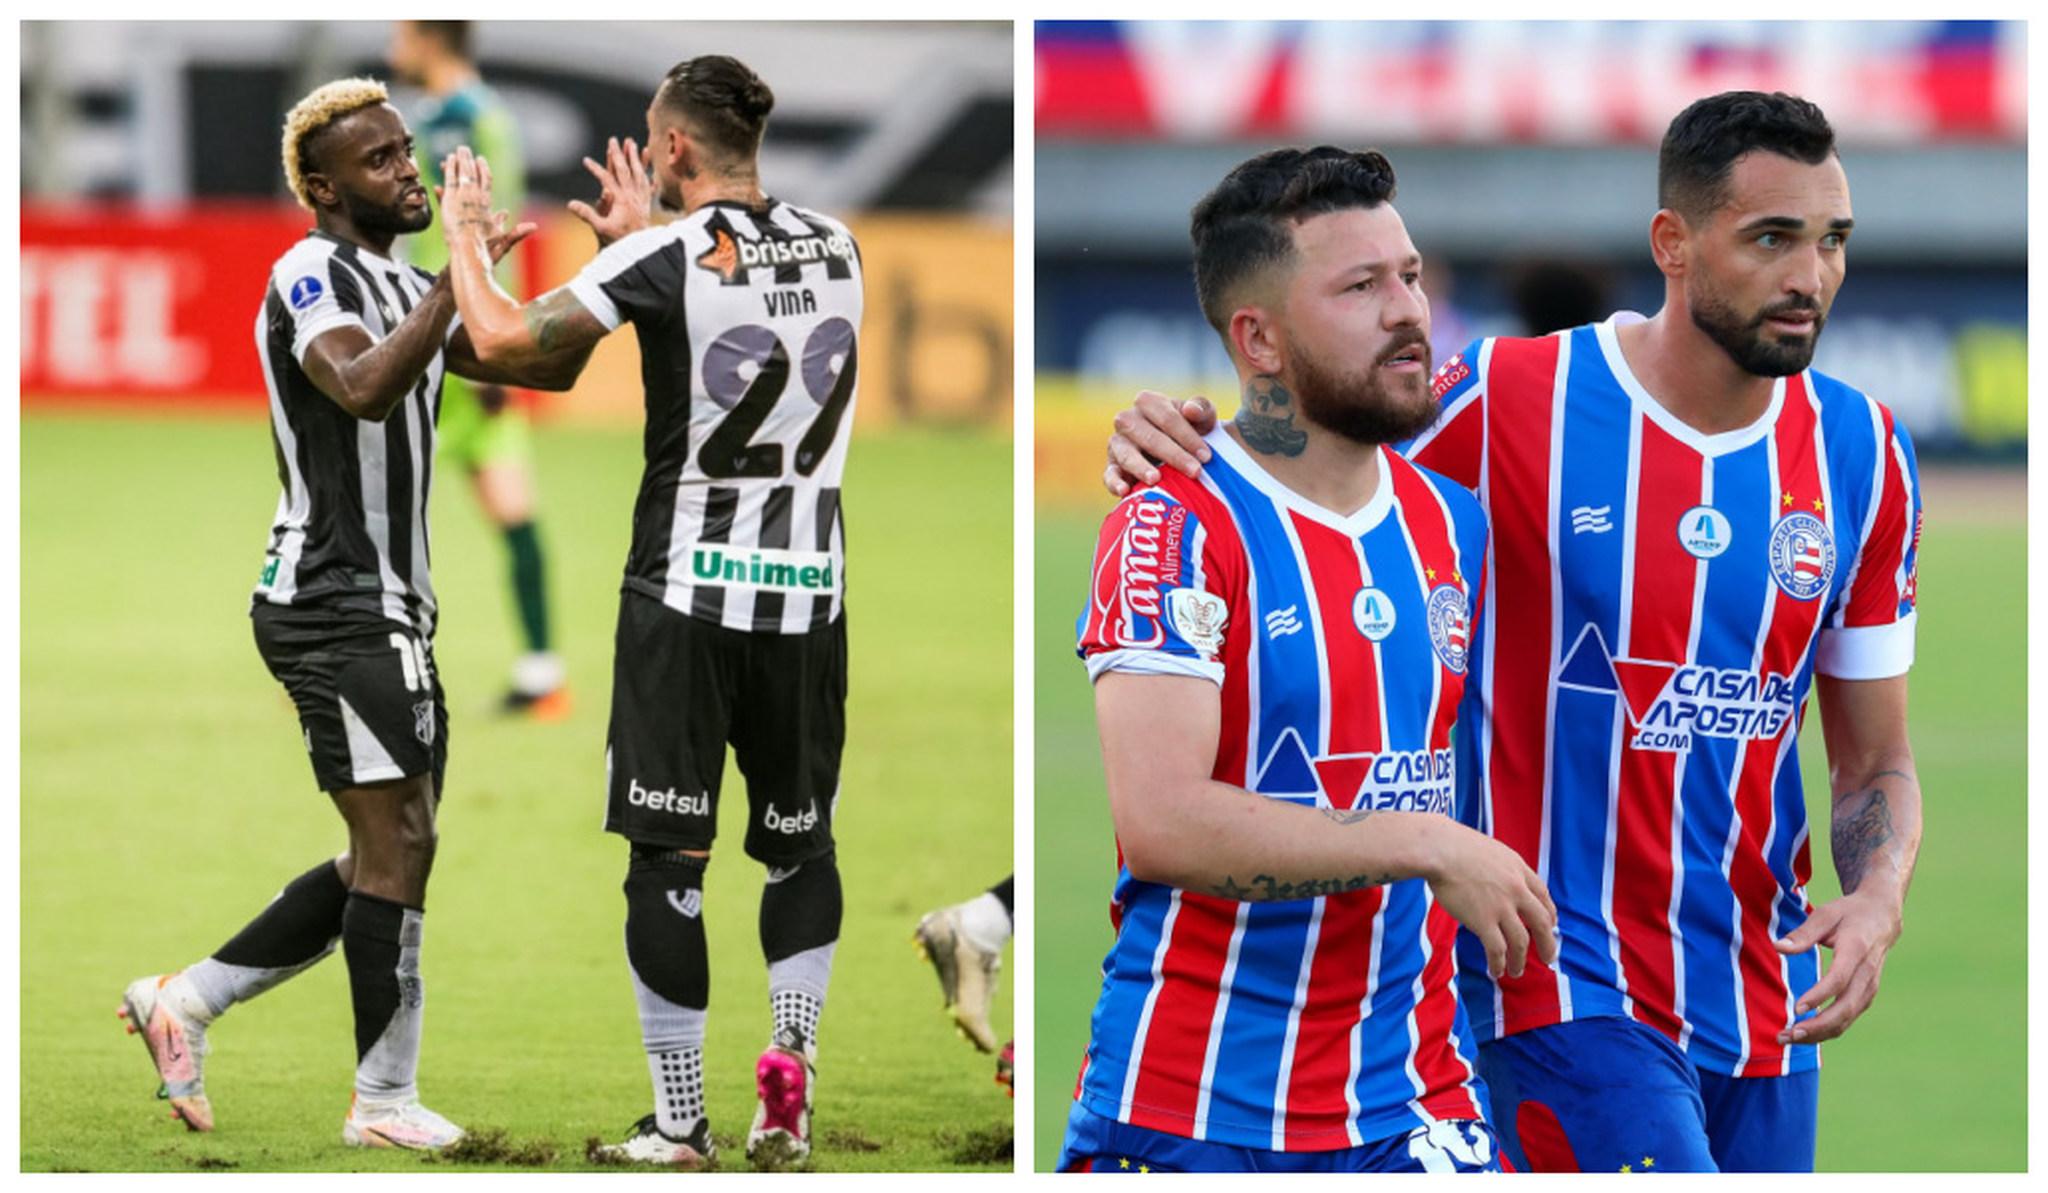 Mendoza e Vina do Ceará comemoram gol, Rossi e Gilberto do Bahia se abraçam em celebração